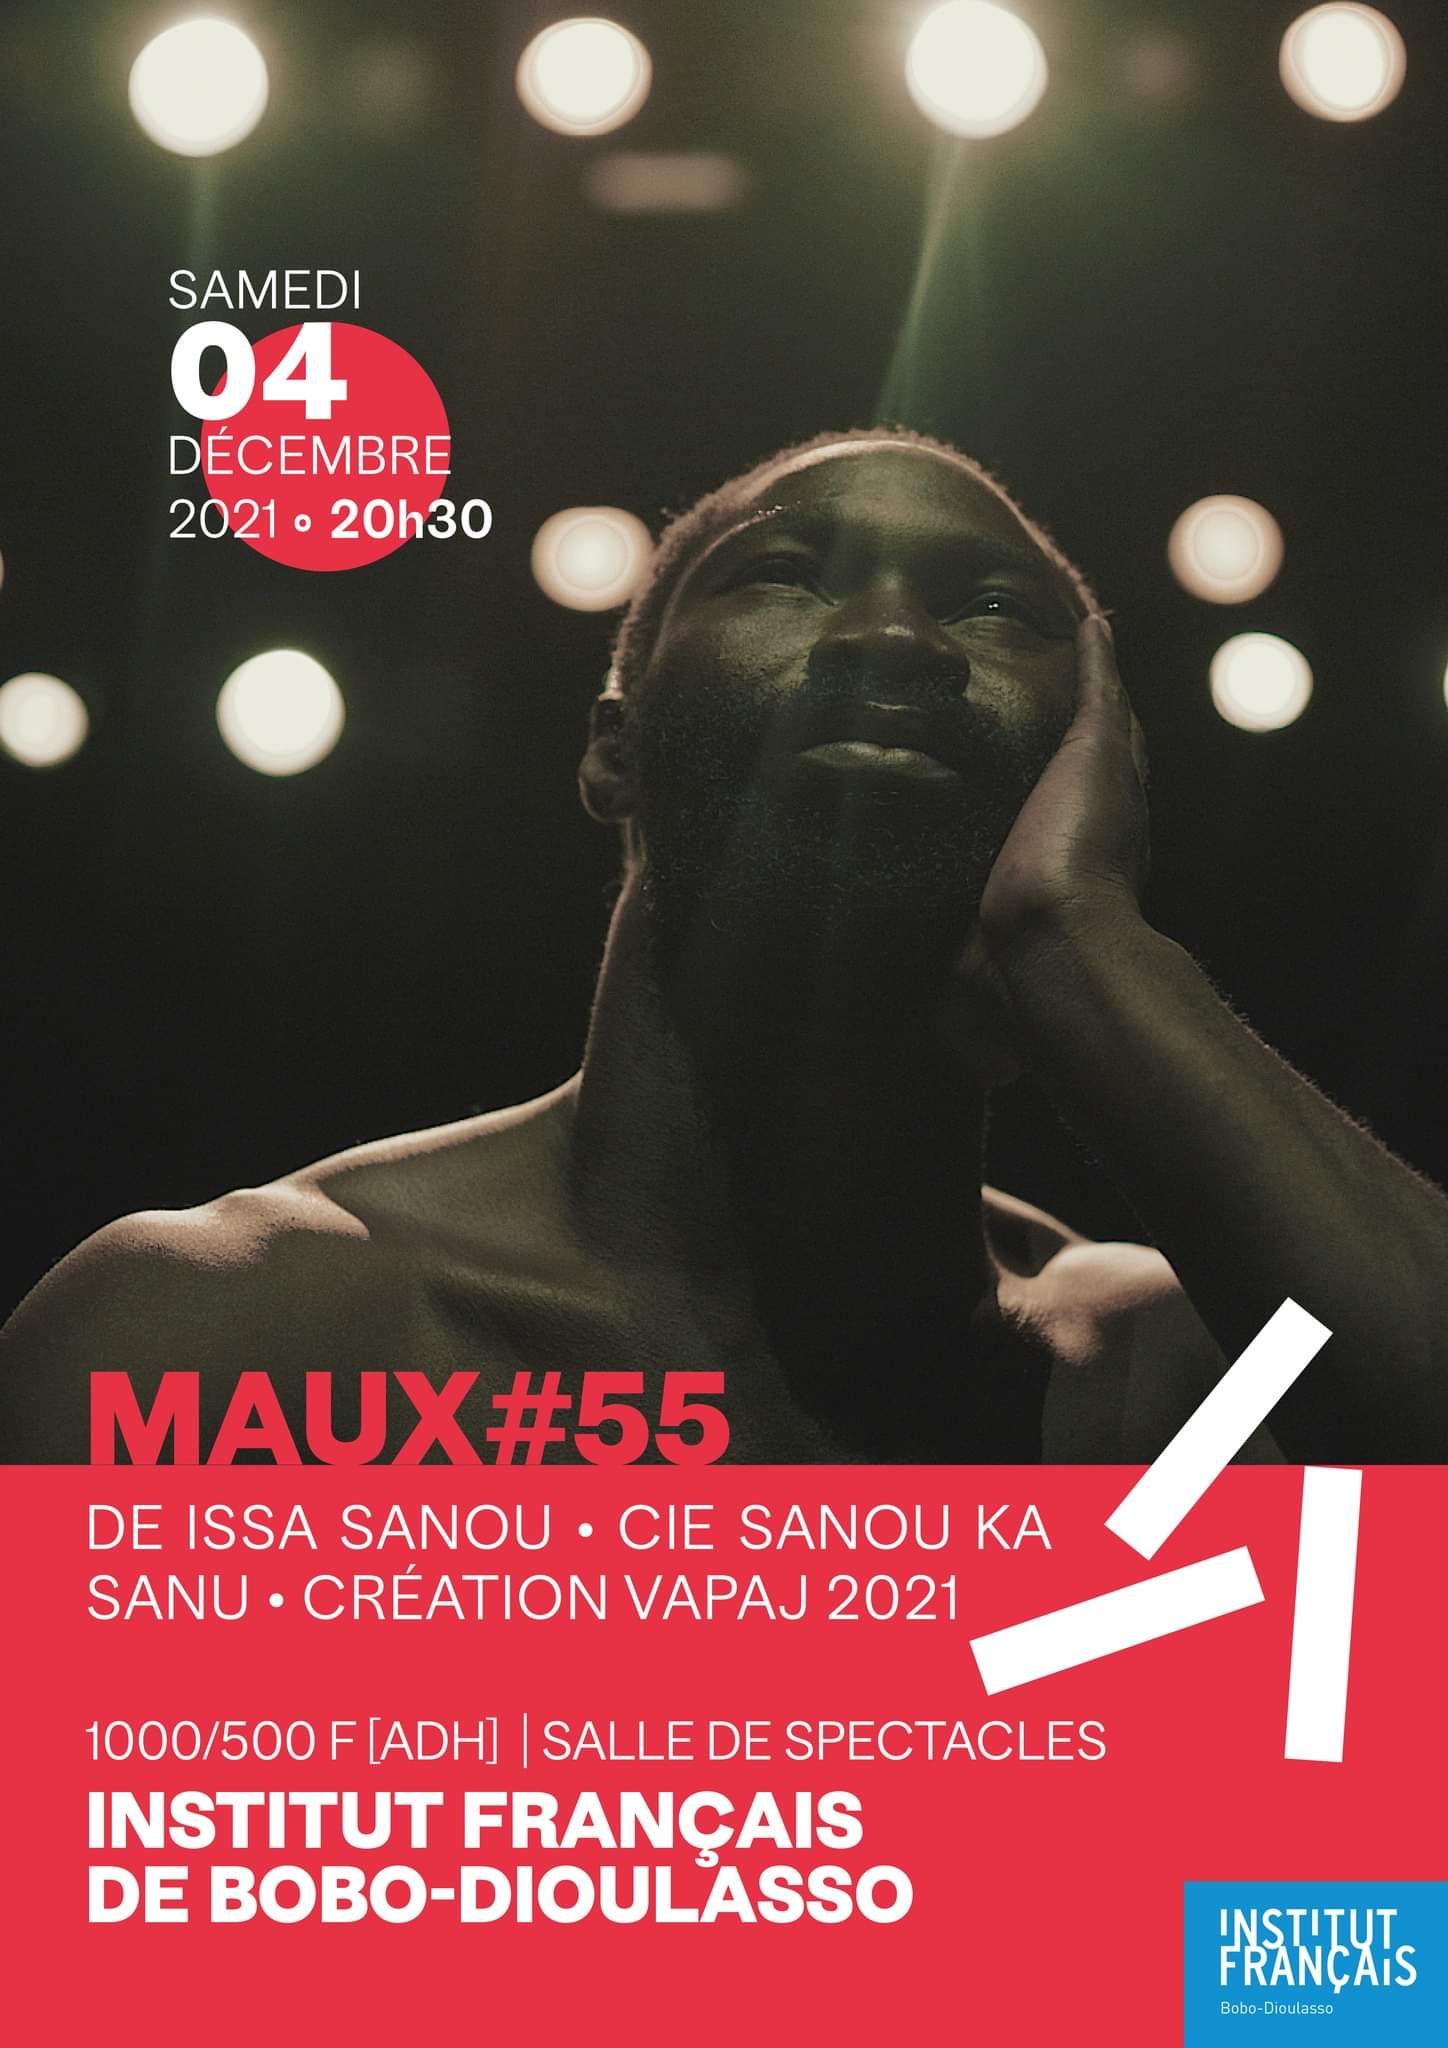  Bobo-Dioulasso: le spectacle “maux” de Issa Sanou attendu à l’Institut français